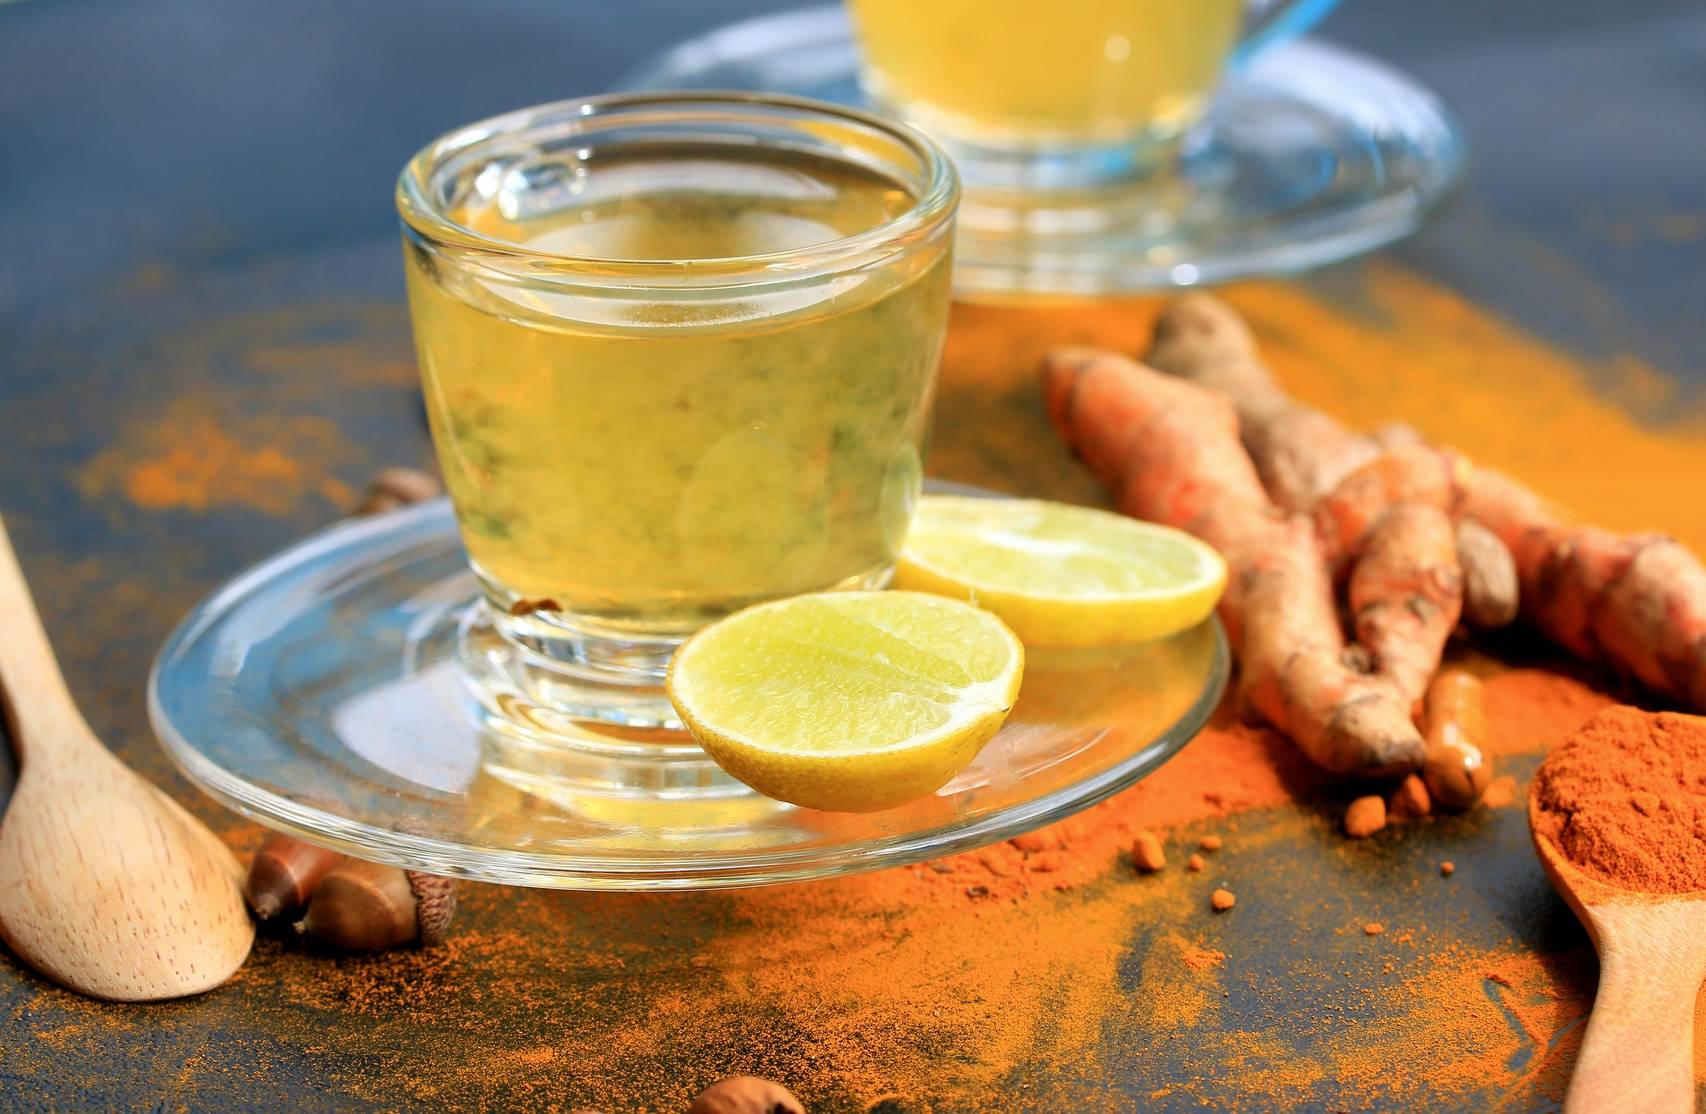 Чай с куркумой: рецепты как правильно заваривать с имбирем, корицей и зеленым чаем, а также польза и вред и сколько грамм в ложке